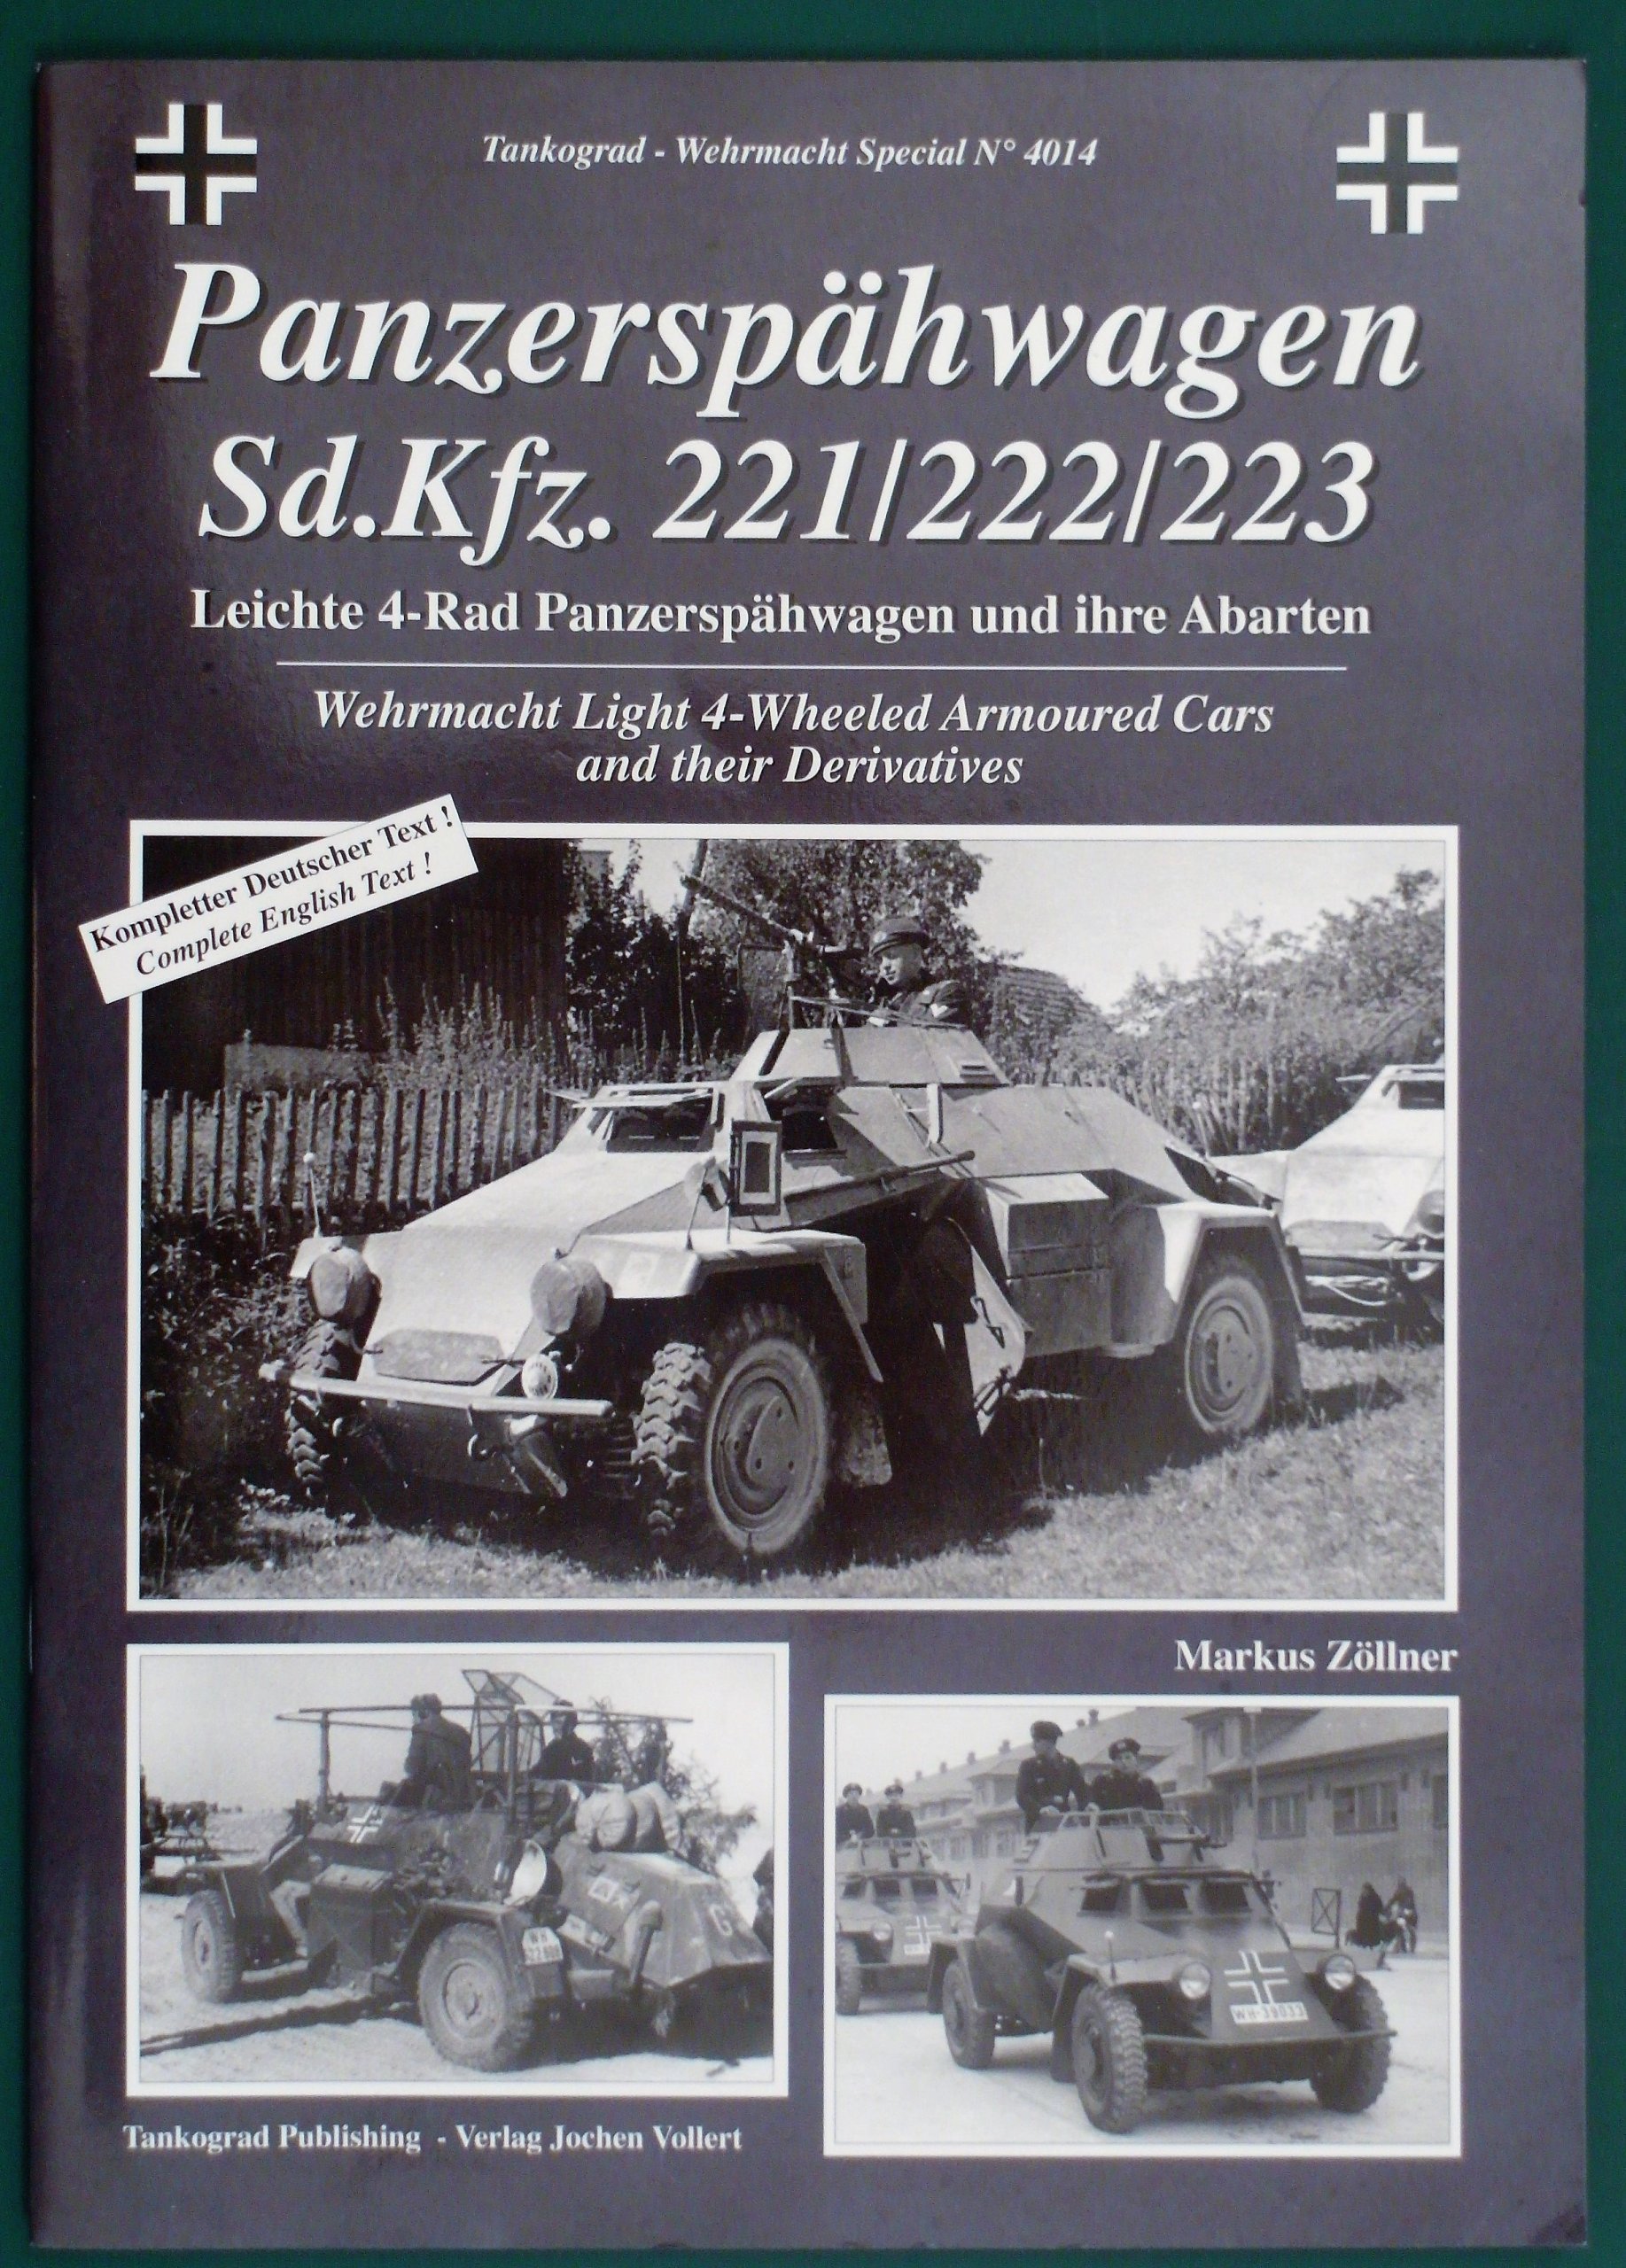 Panzerspahwagen Sd.Kfz 221/222/223  - Tankograd